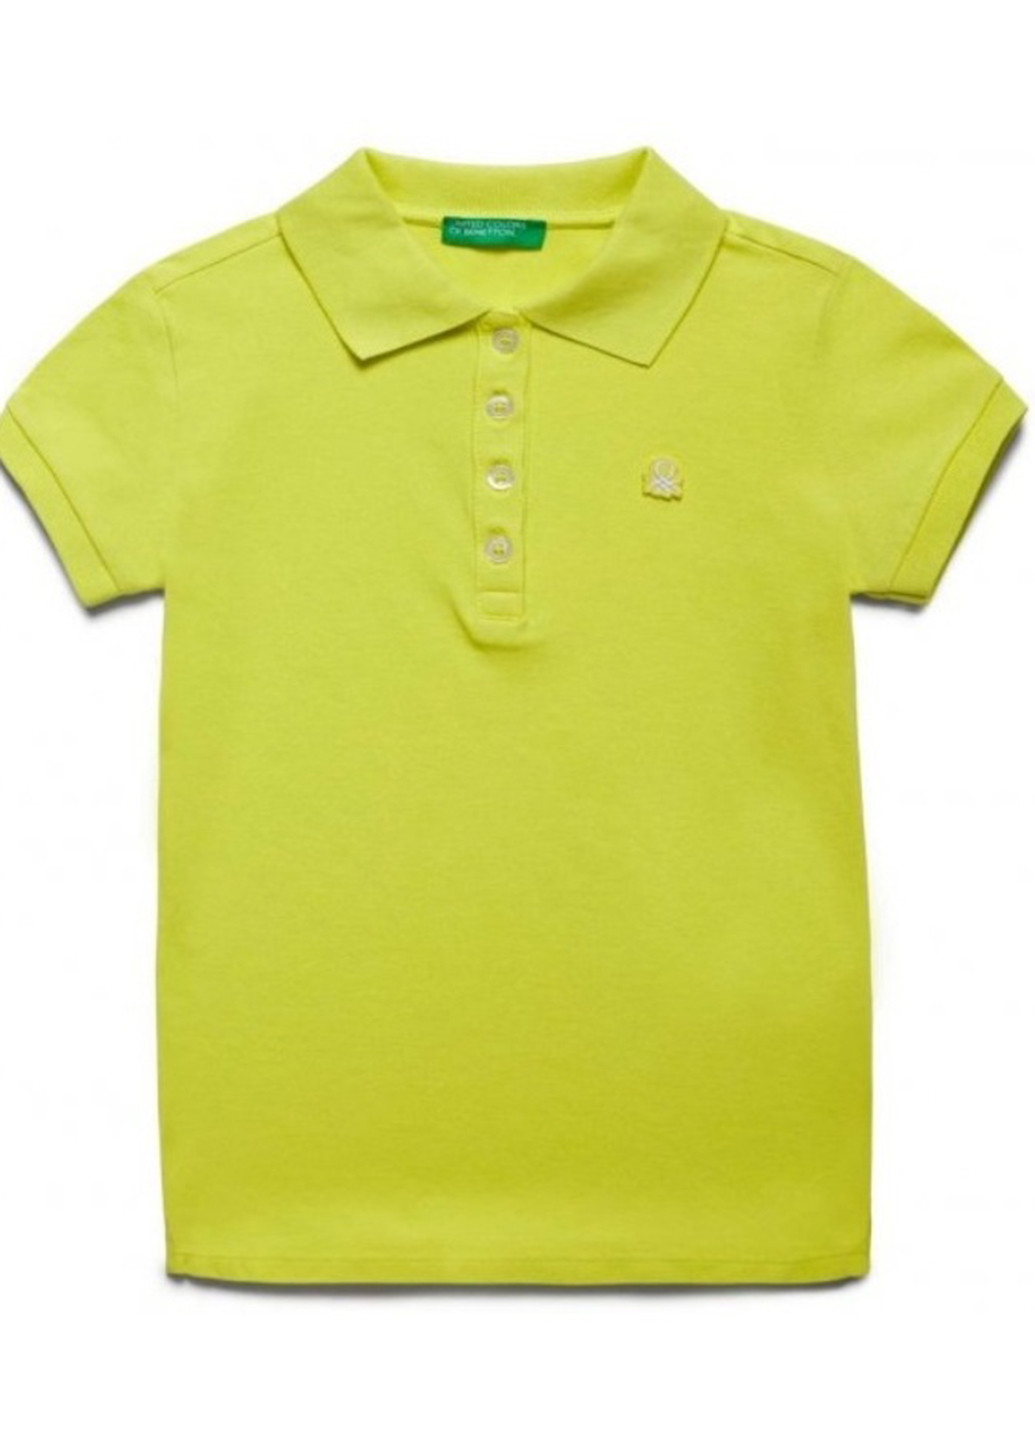 Лайм детская футболка-поло для девочки United Colors of Benetton однотонная